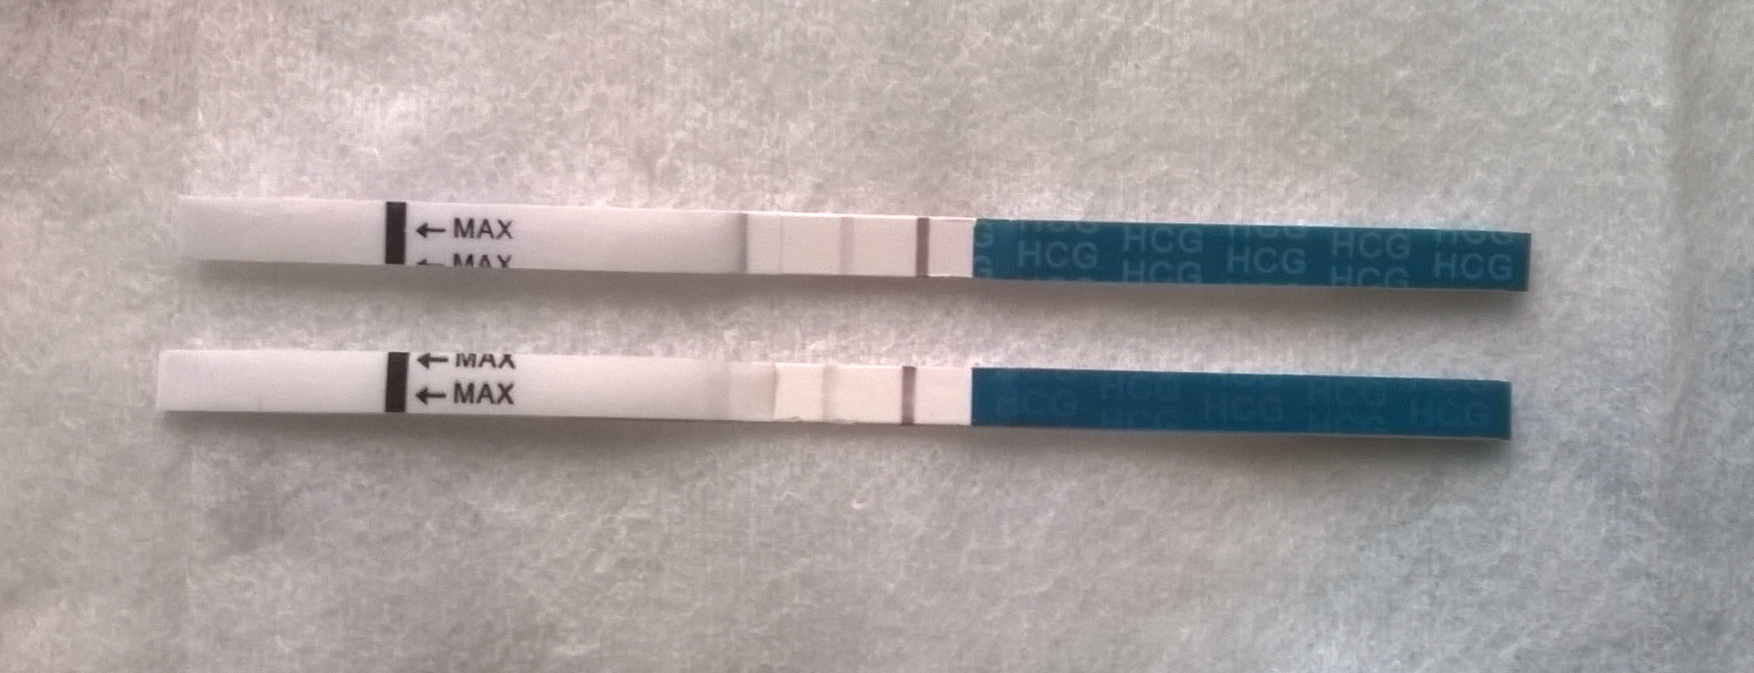 Тест на беременность показал бледную полоску